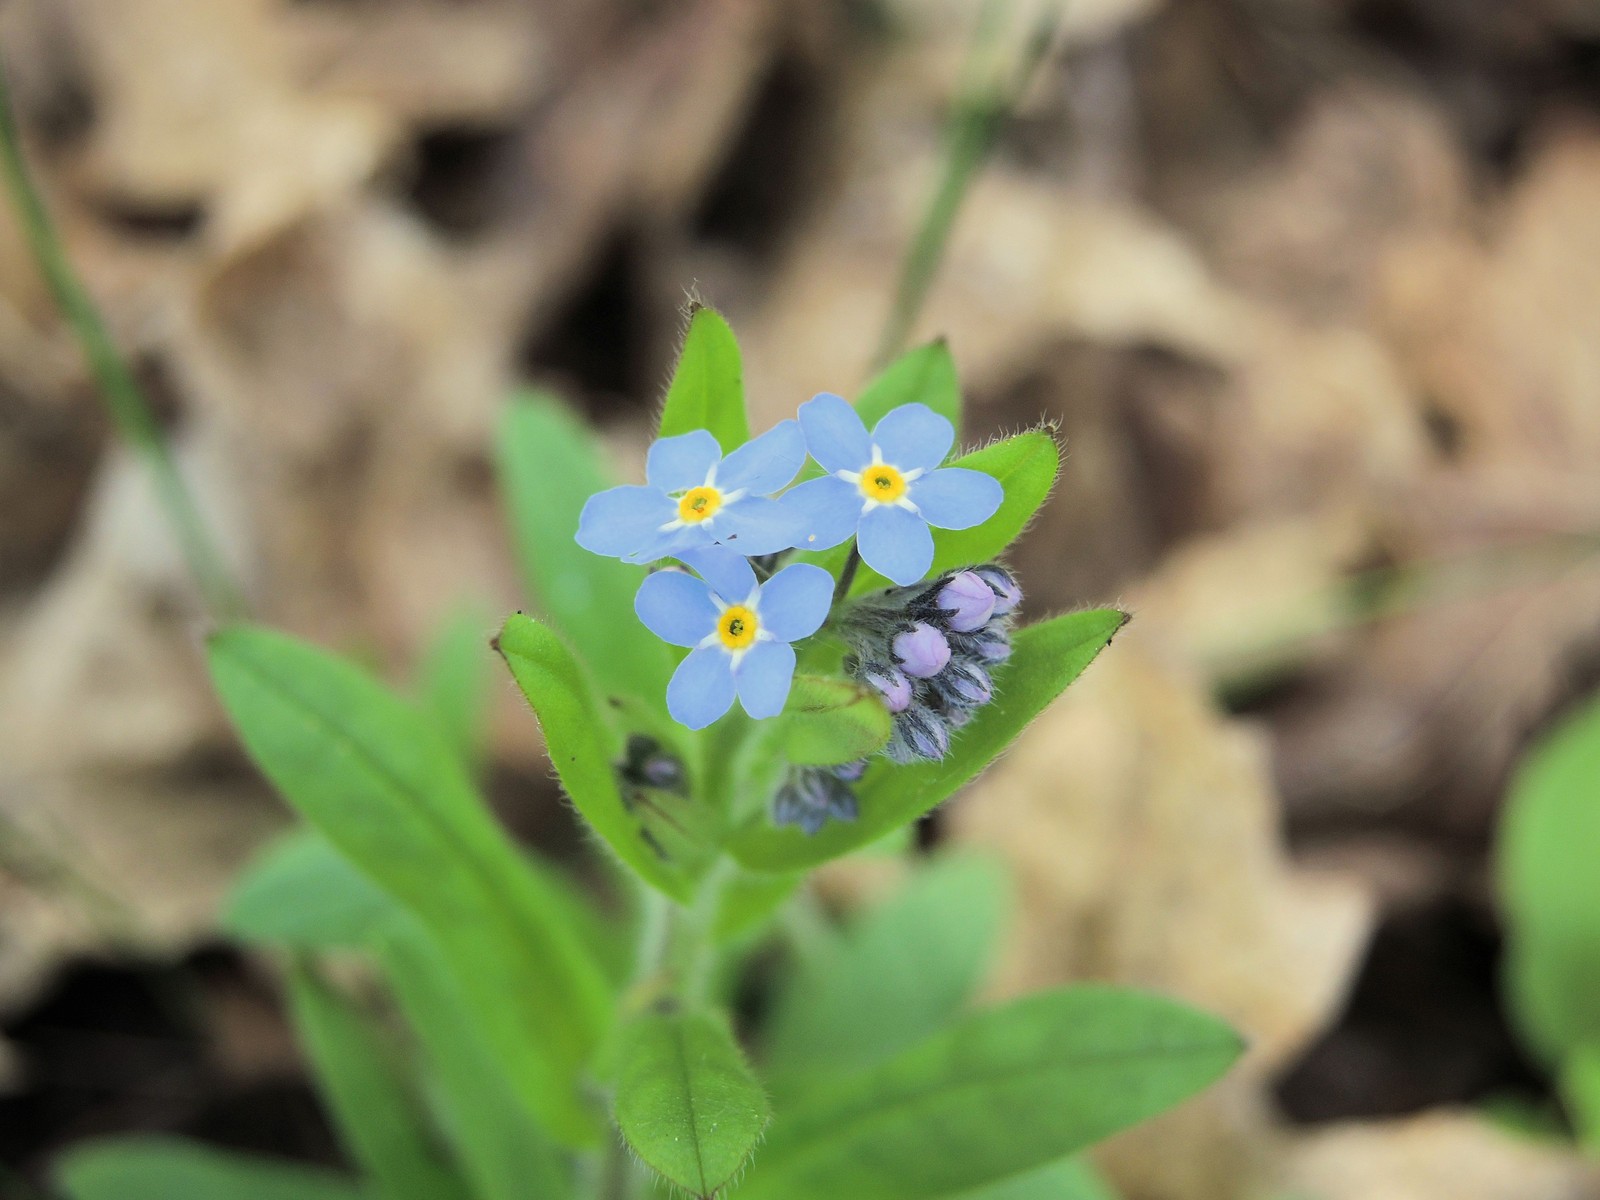 201405291728008 Forget-Me-Not (Myosotis) blue flowers - Manitoulin Island.JPG